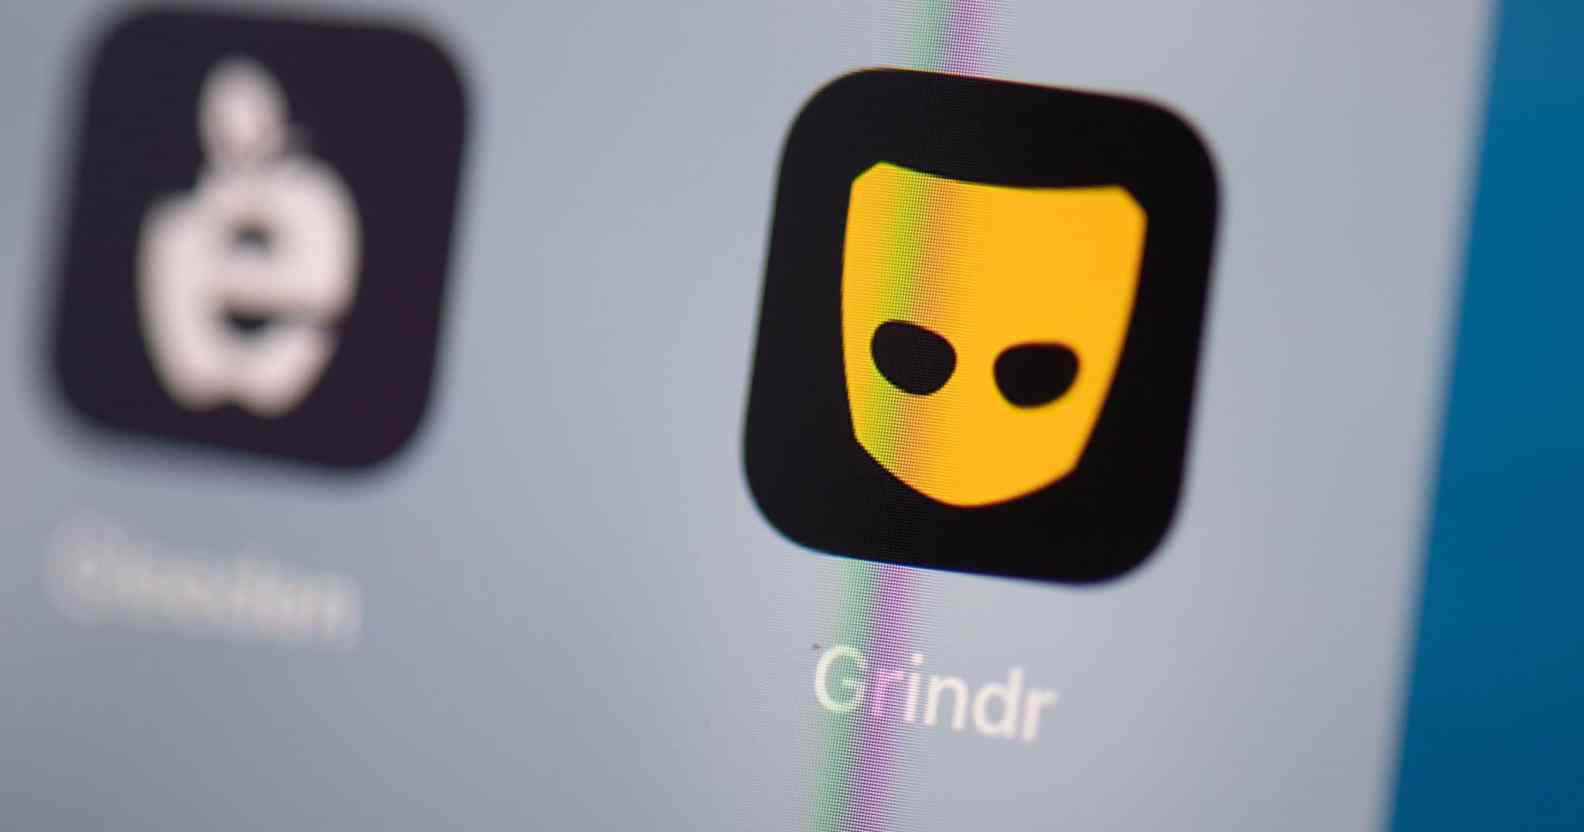 Grindr on an Apple iPhone